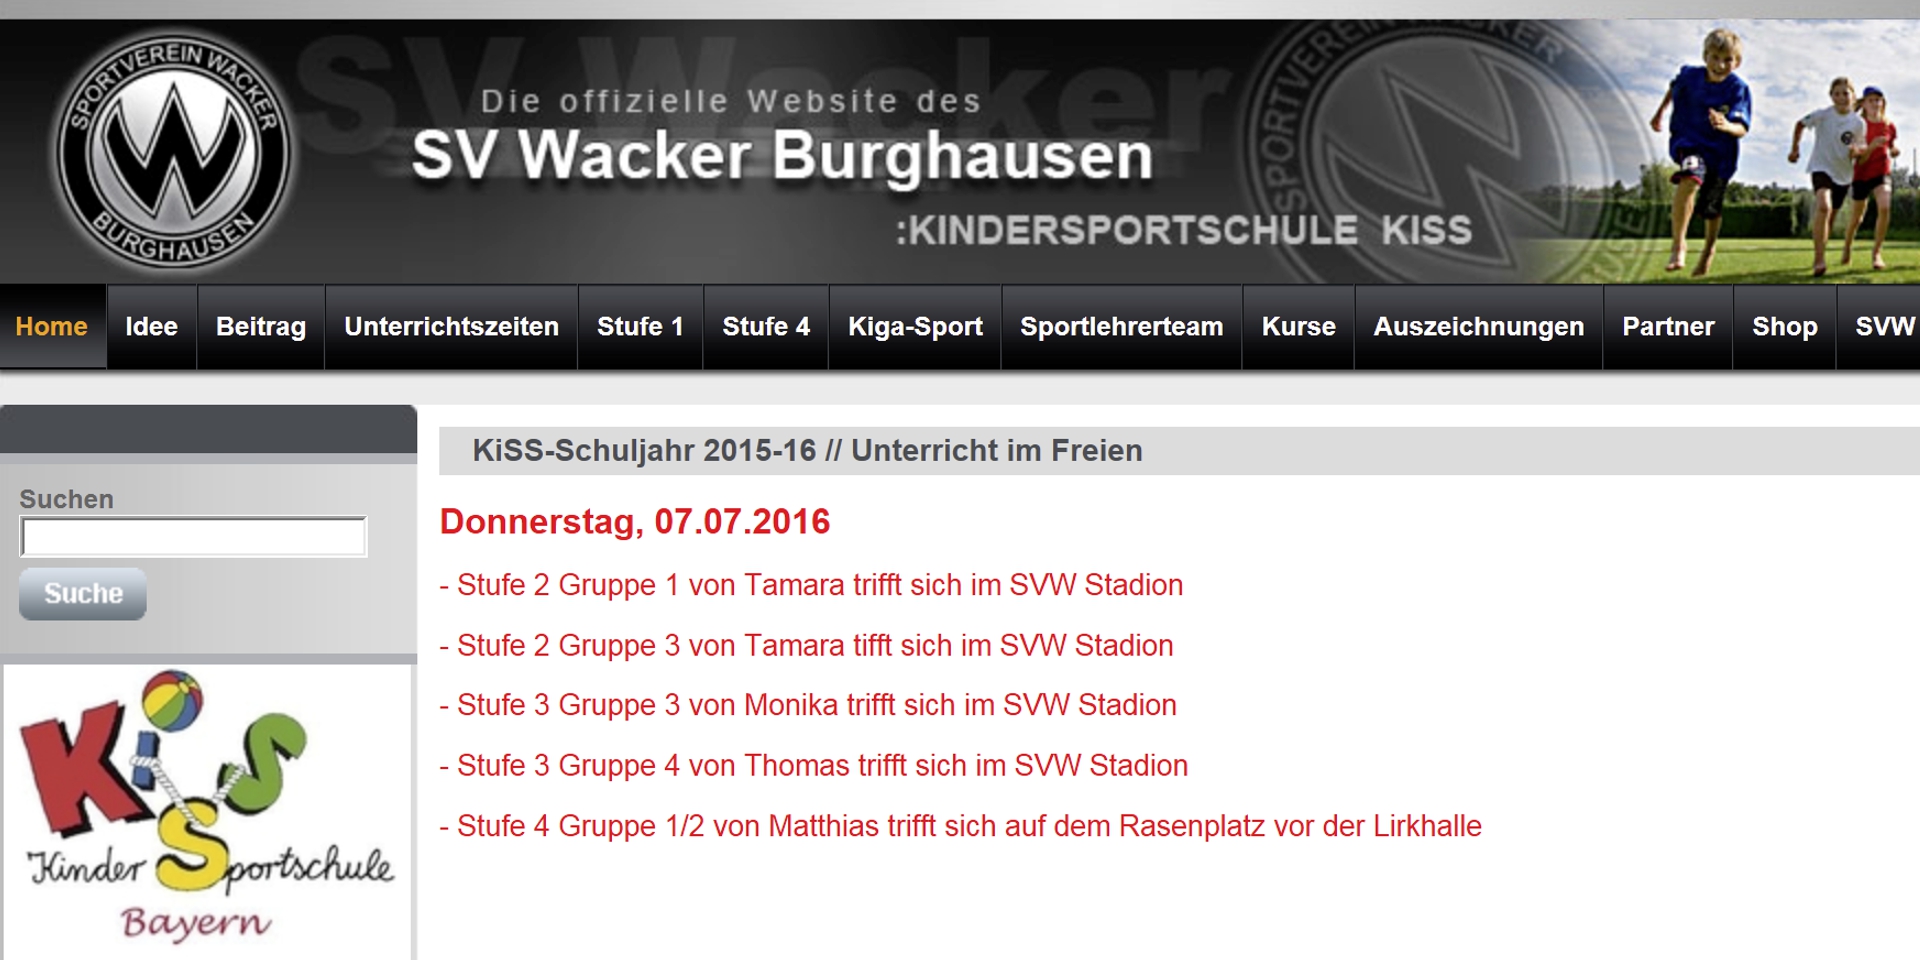 Kindersportschule des SV Wacker Burghausen